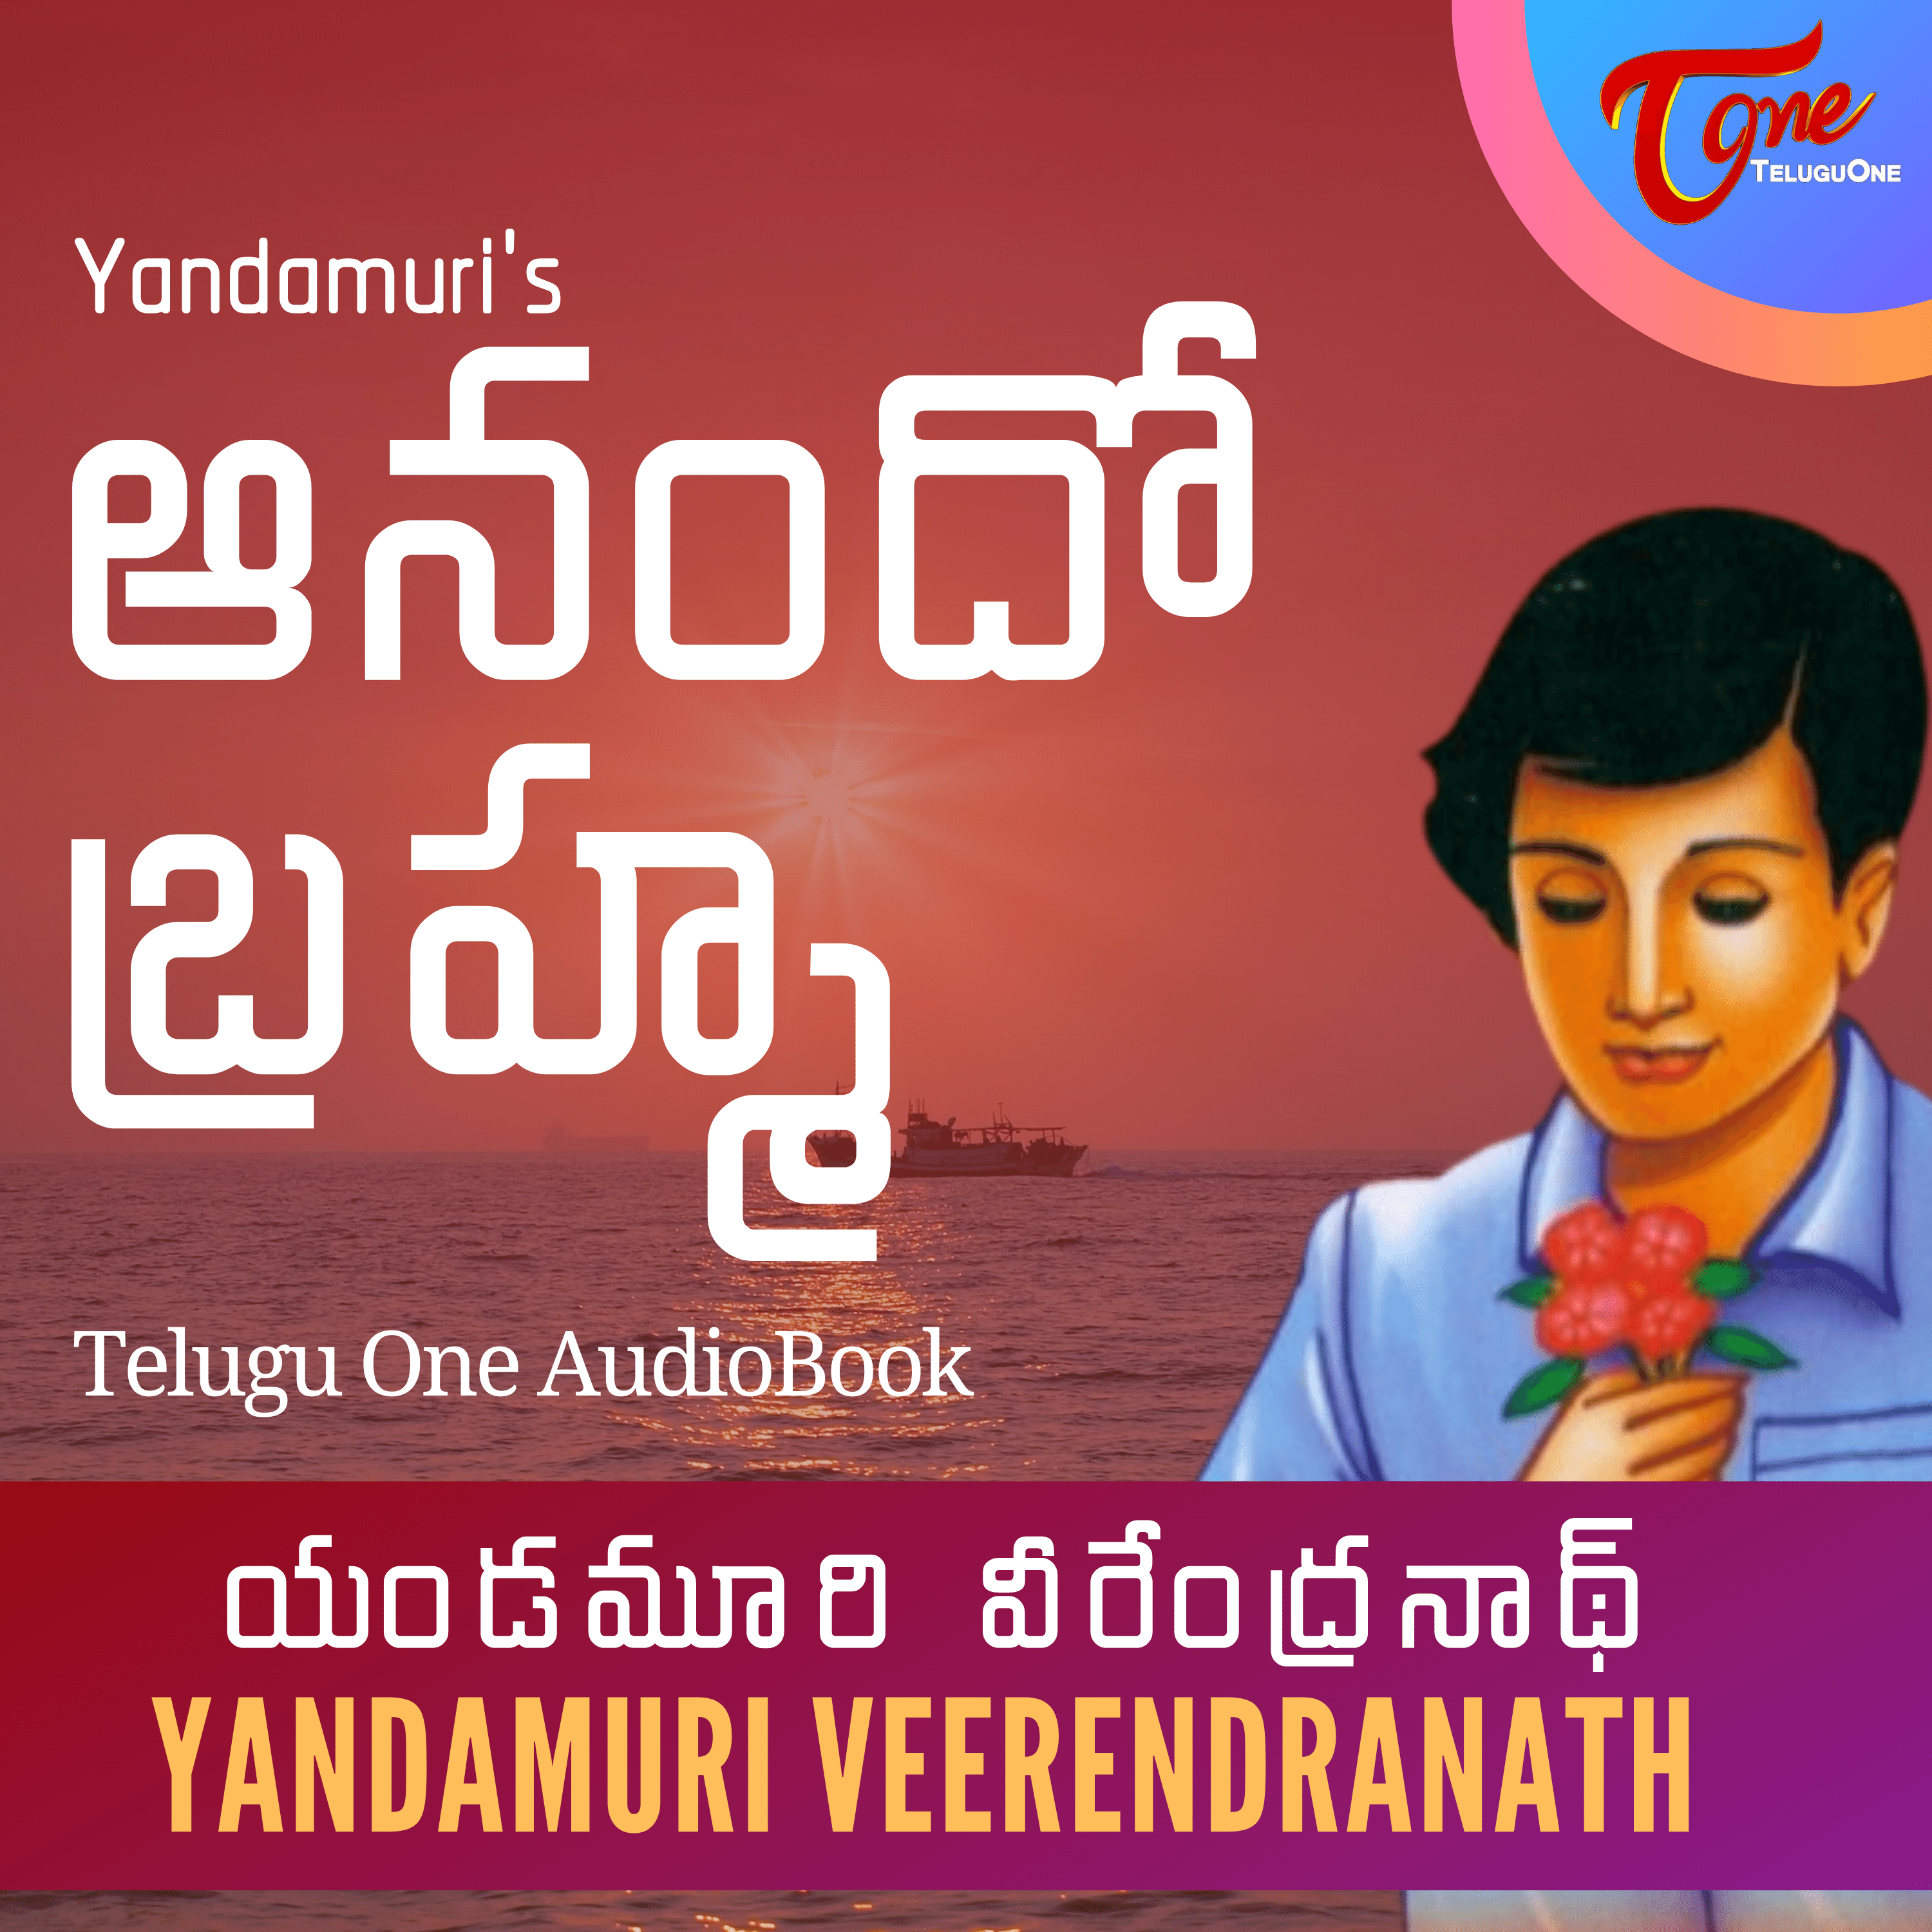 Ep 13 - Anando Bramha by Yandamoori Veerendranath - AudioBook